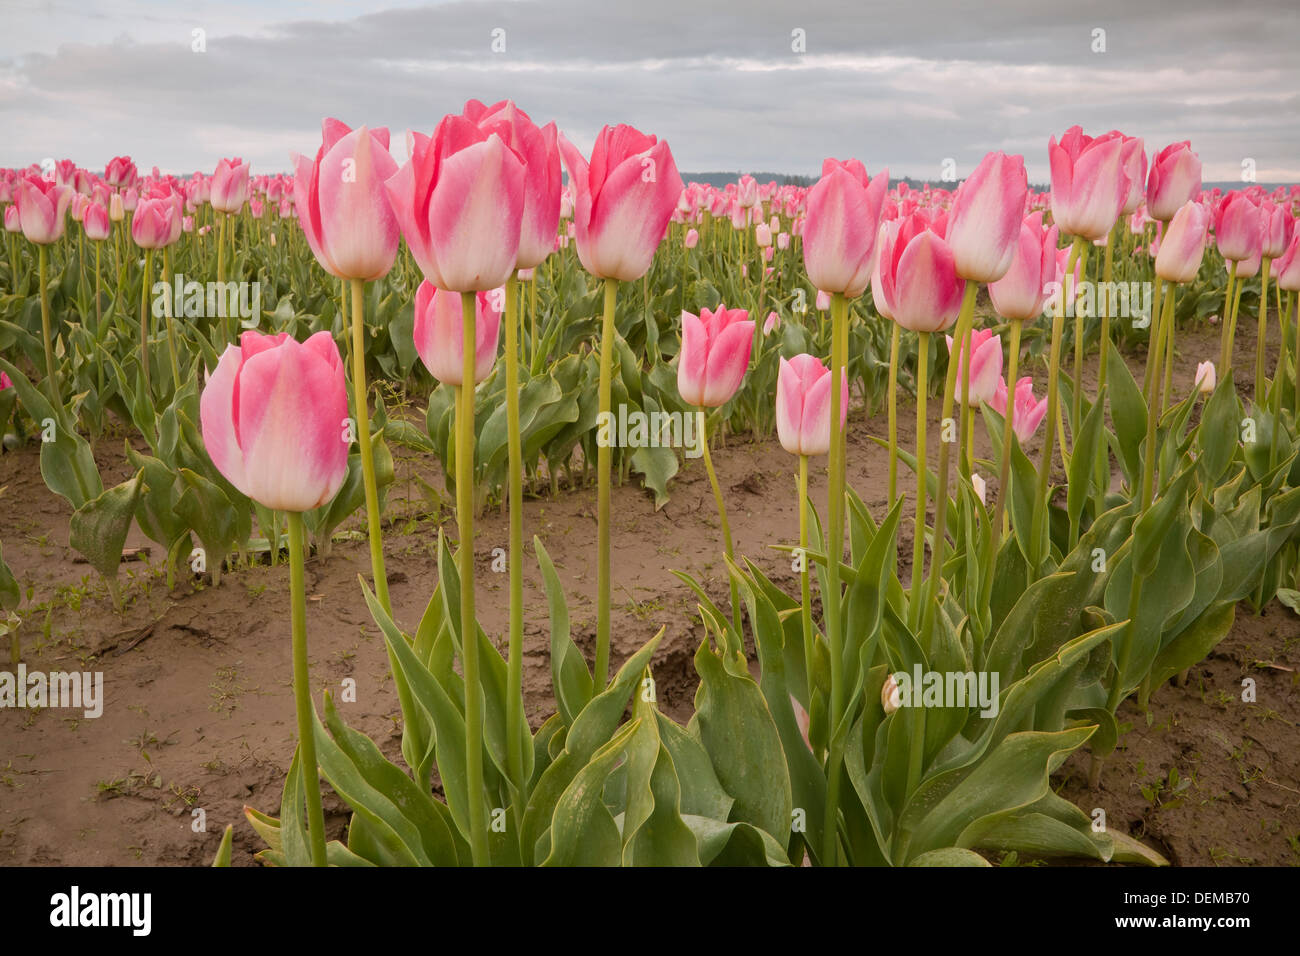 WASHINGTON - Bereich der kommerziell angebaut Tulpen im Skagit River Valley in der Nähe von Mount Vernon. Stockfoto